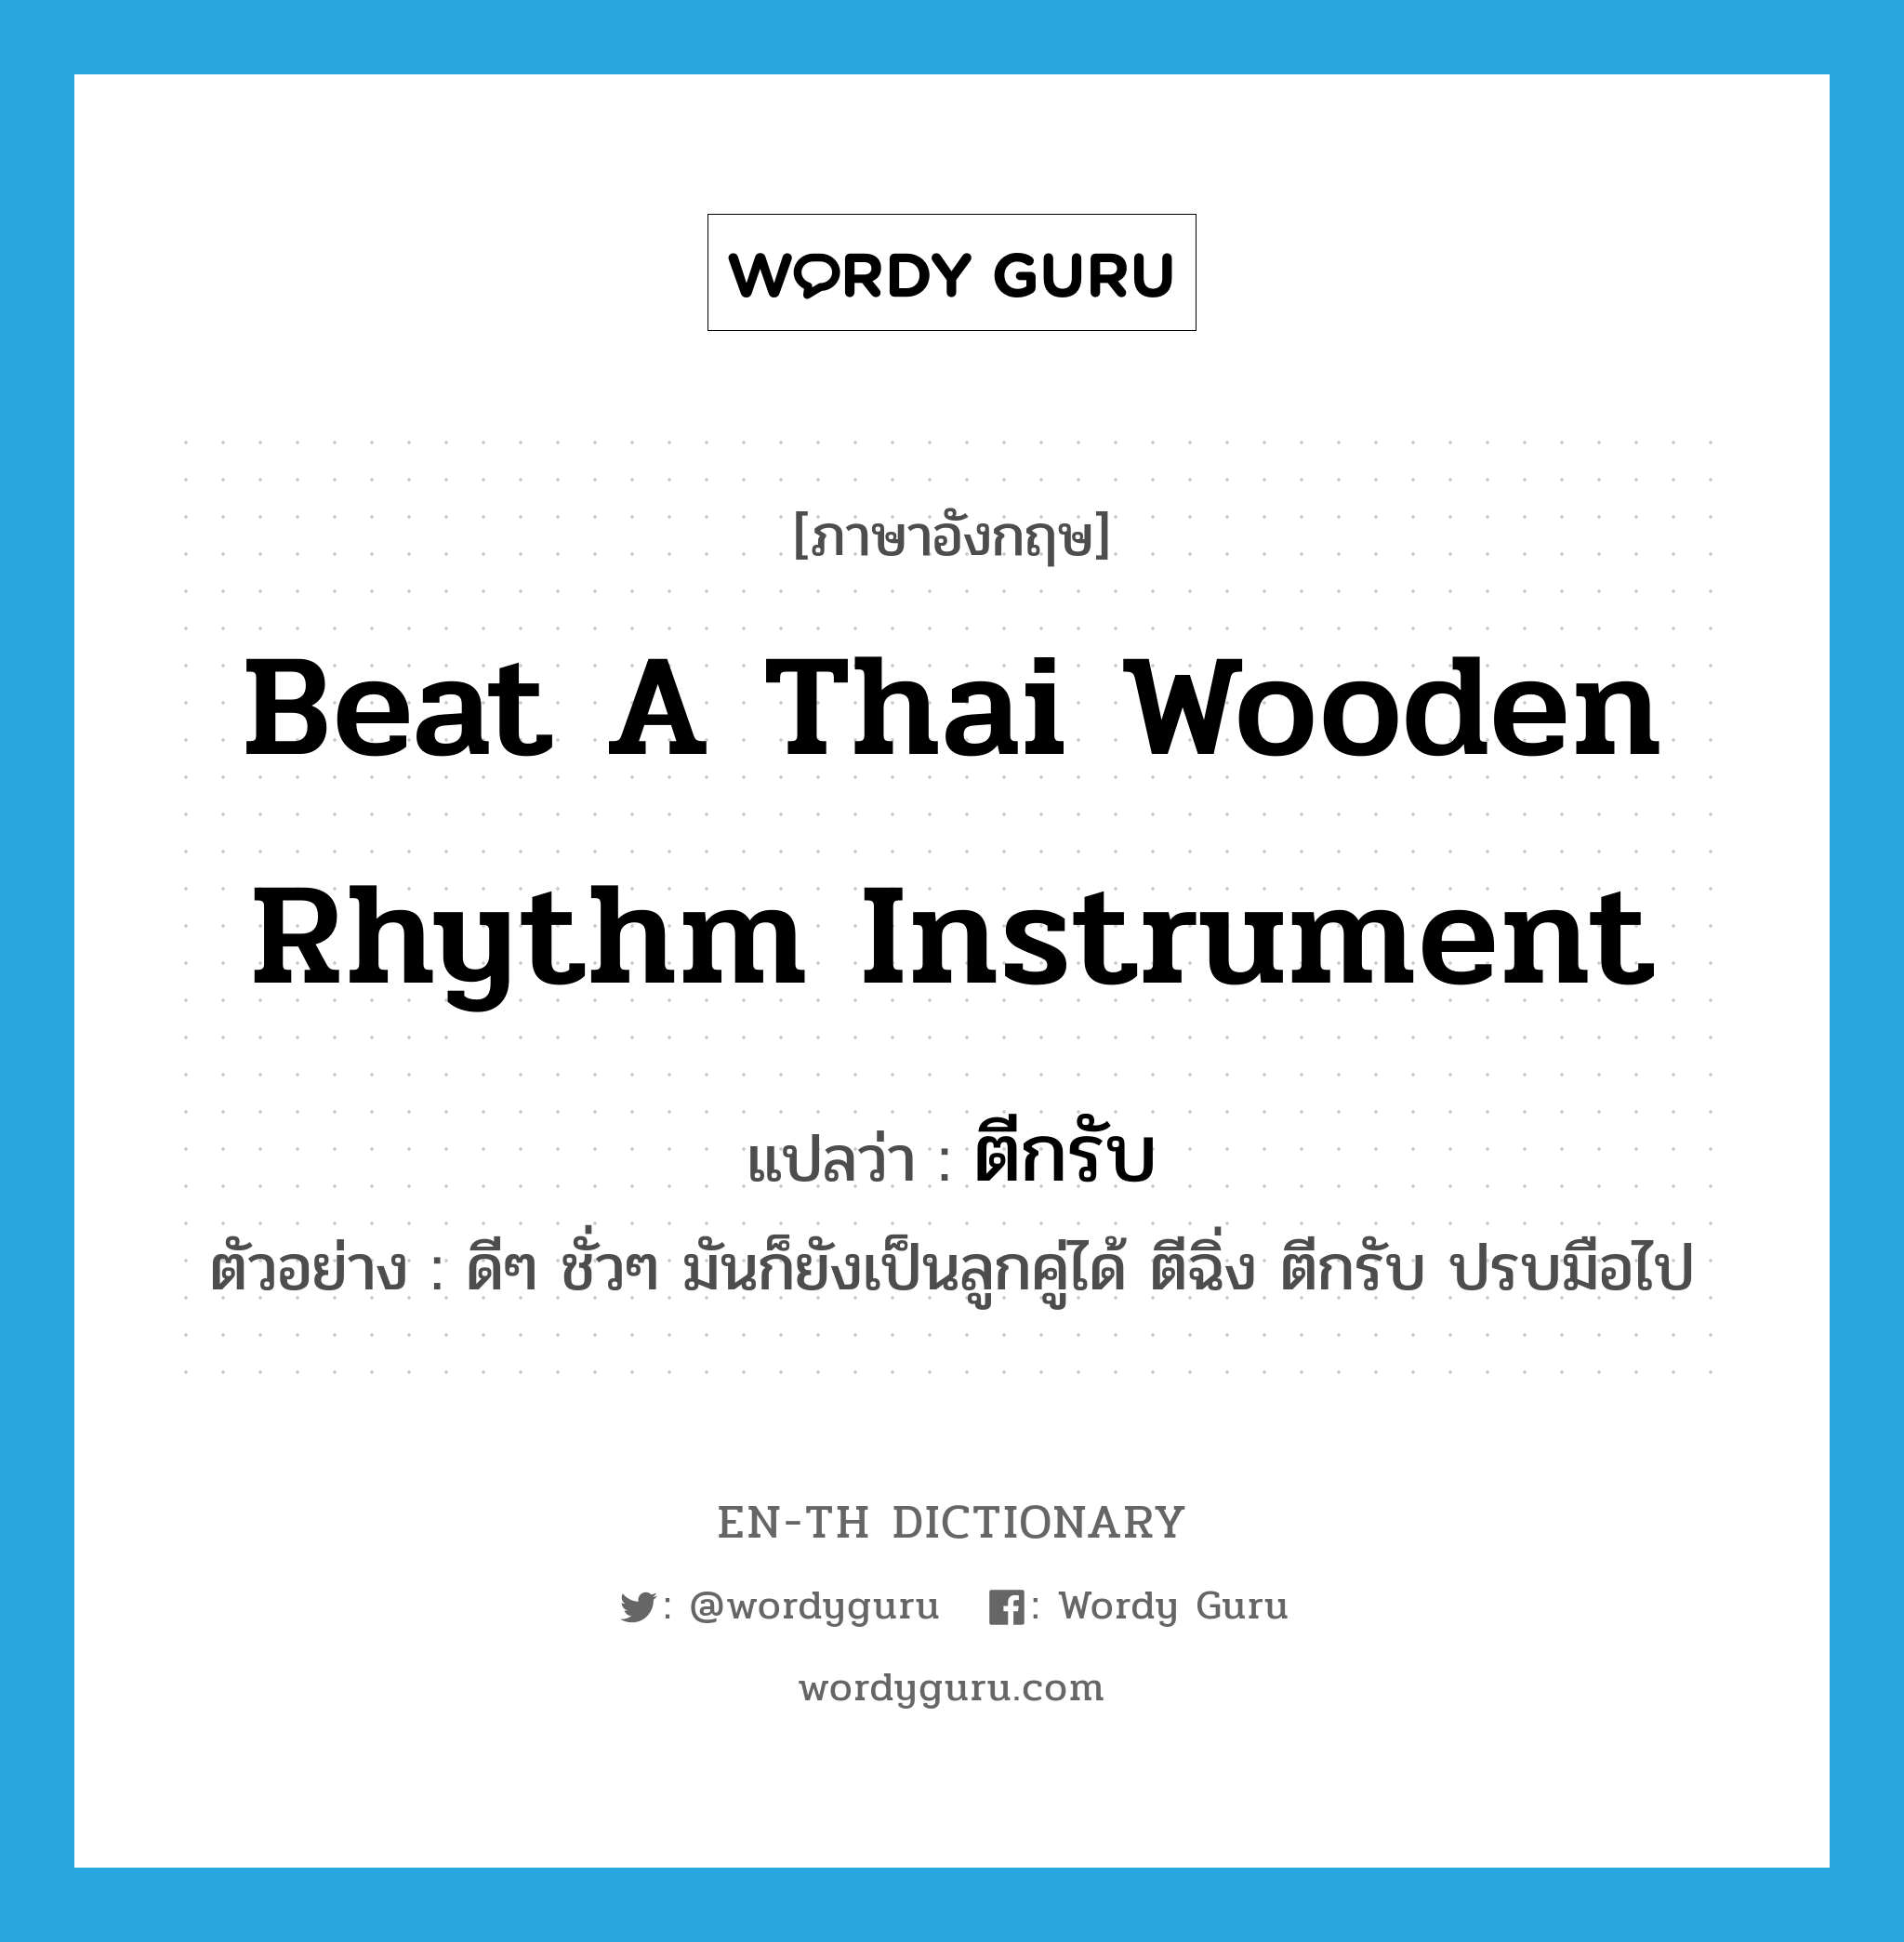 ตีกรับ ภาษาอังกฤษ?, คำศัพท์ภาษาอังกฤษ ตีกรับ แปลว่า beat a Thai wooden rhythm instrument ประเภท V ตัวอย่าง ดีๆ ชั่วๆ มันก็ยังเป็นลูกคู่ได้ ตีฉิ่ง ตีกรับ ปรบมือไป หมวด V